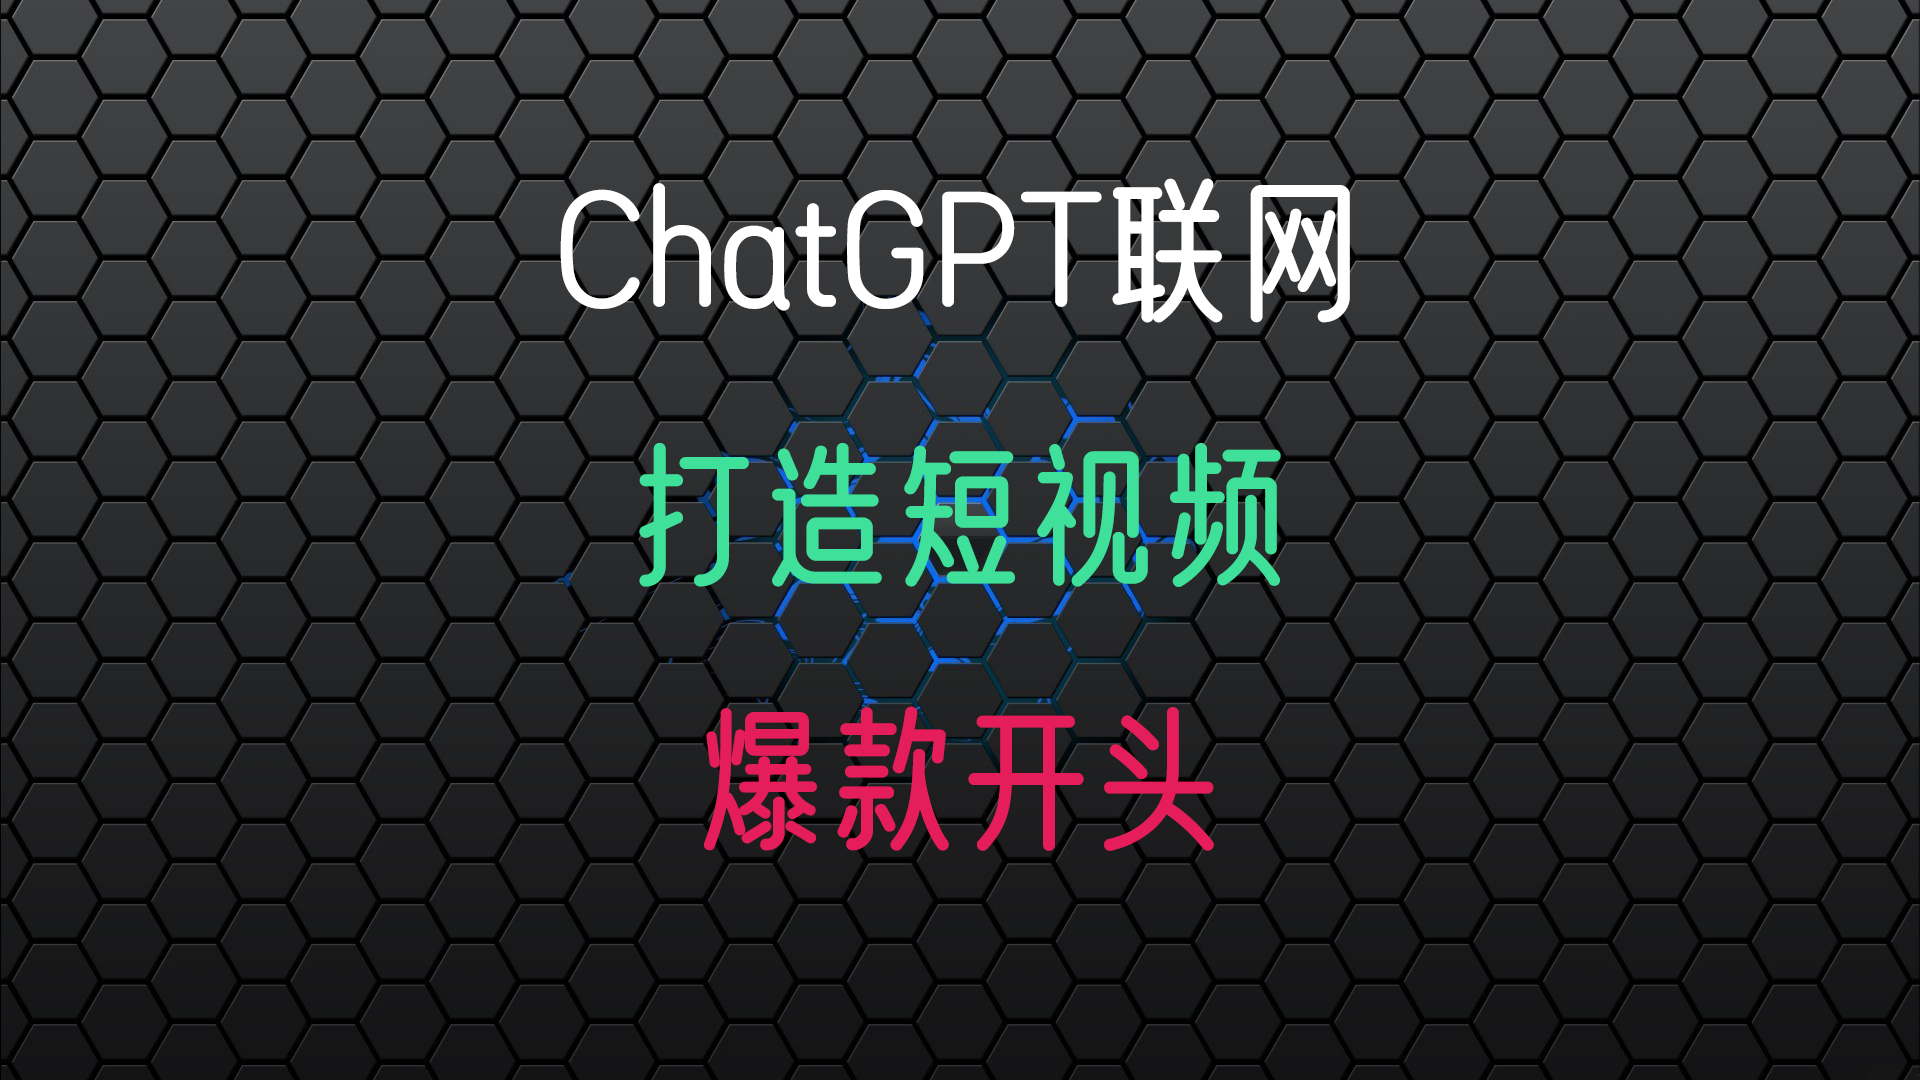 使用ChatGPT打造短视频爆款开头, ChatGPT联网啦, 可以直接播放周杰伦的音乐